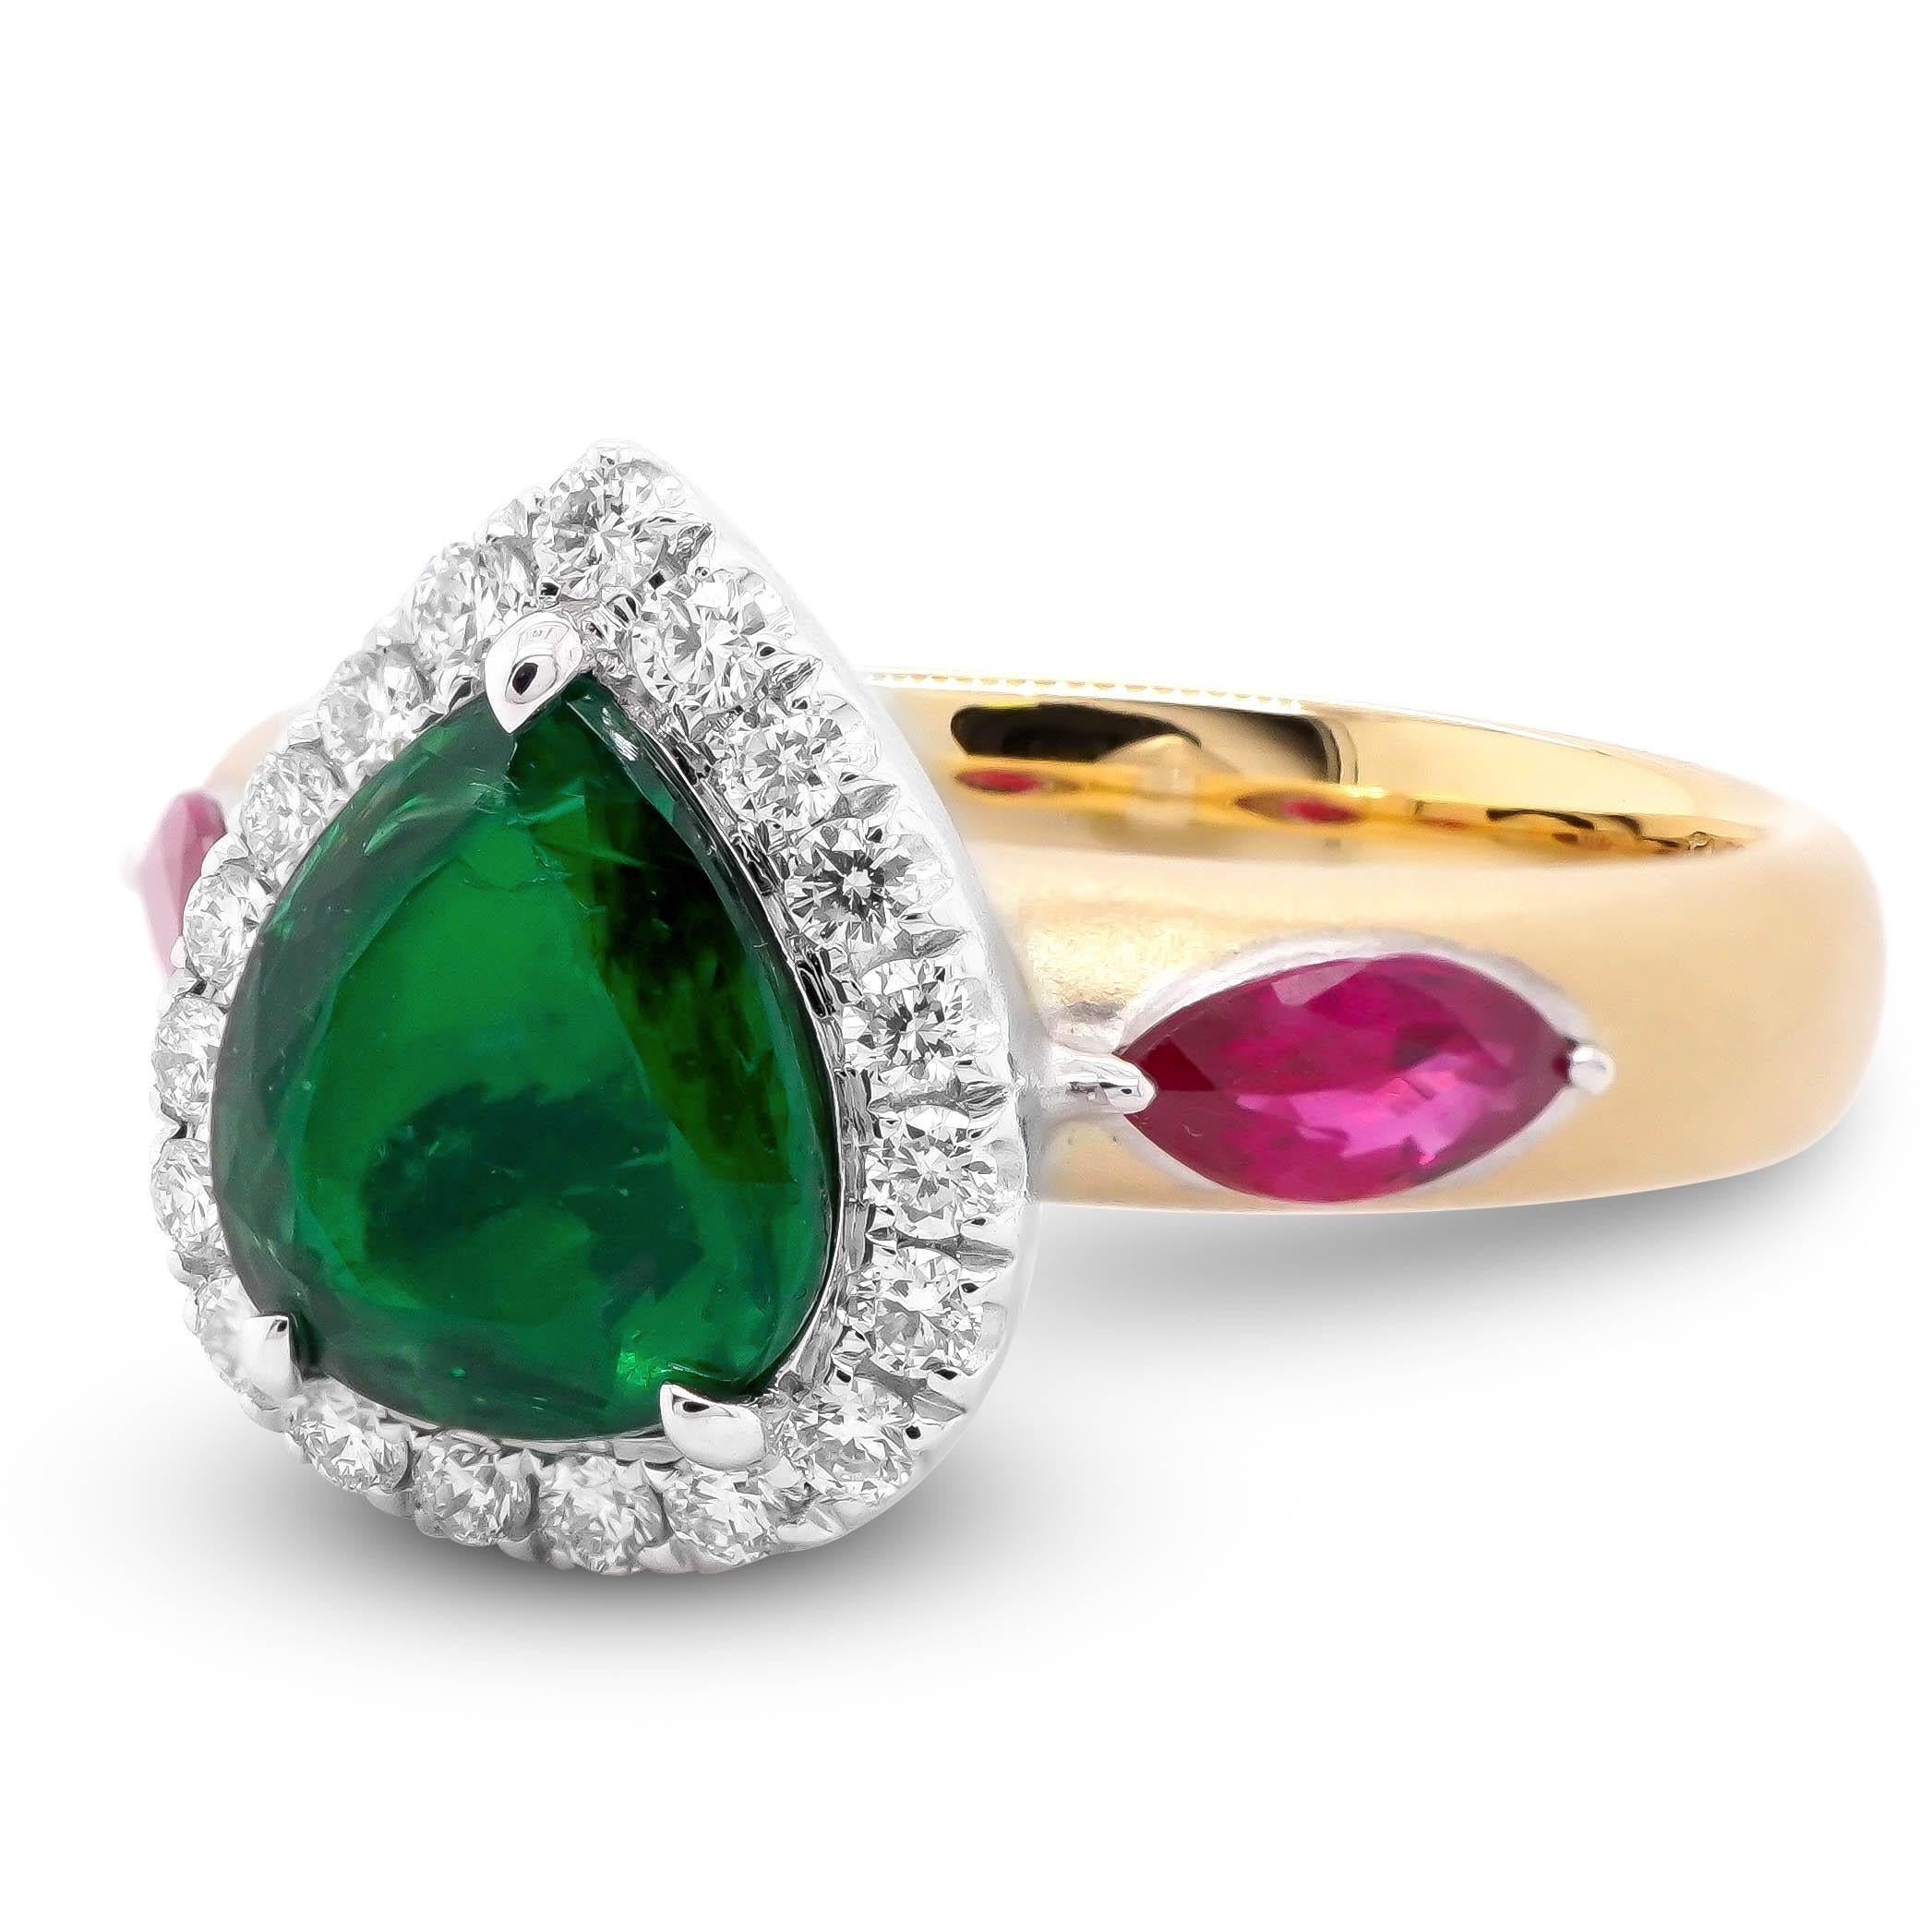 Ein tief gesättigter, lebhaft grüner Smaragd mit einem Gewicht von 1,05 Karat ist zusammen mit einem lebhaft roten Rubin von 0,42 Karat und einem runden weißen Diamanten von 0,23 Karat gefasst. Der Ring ist in 18 Karat Gelbgold gefasst und wurde in